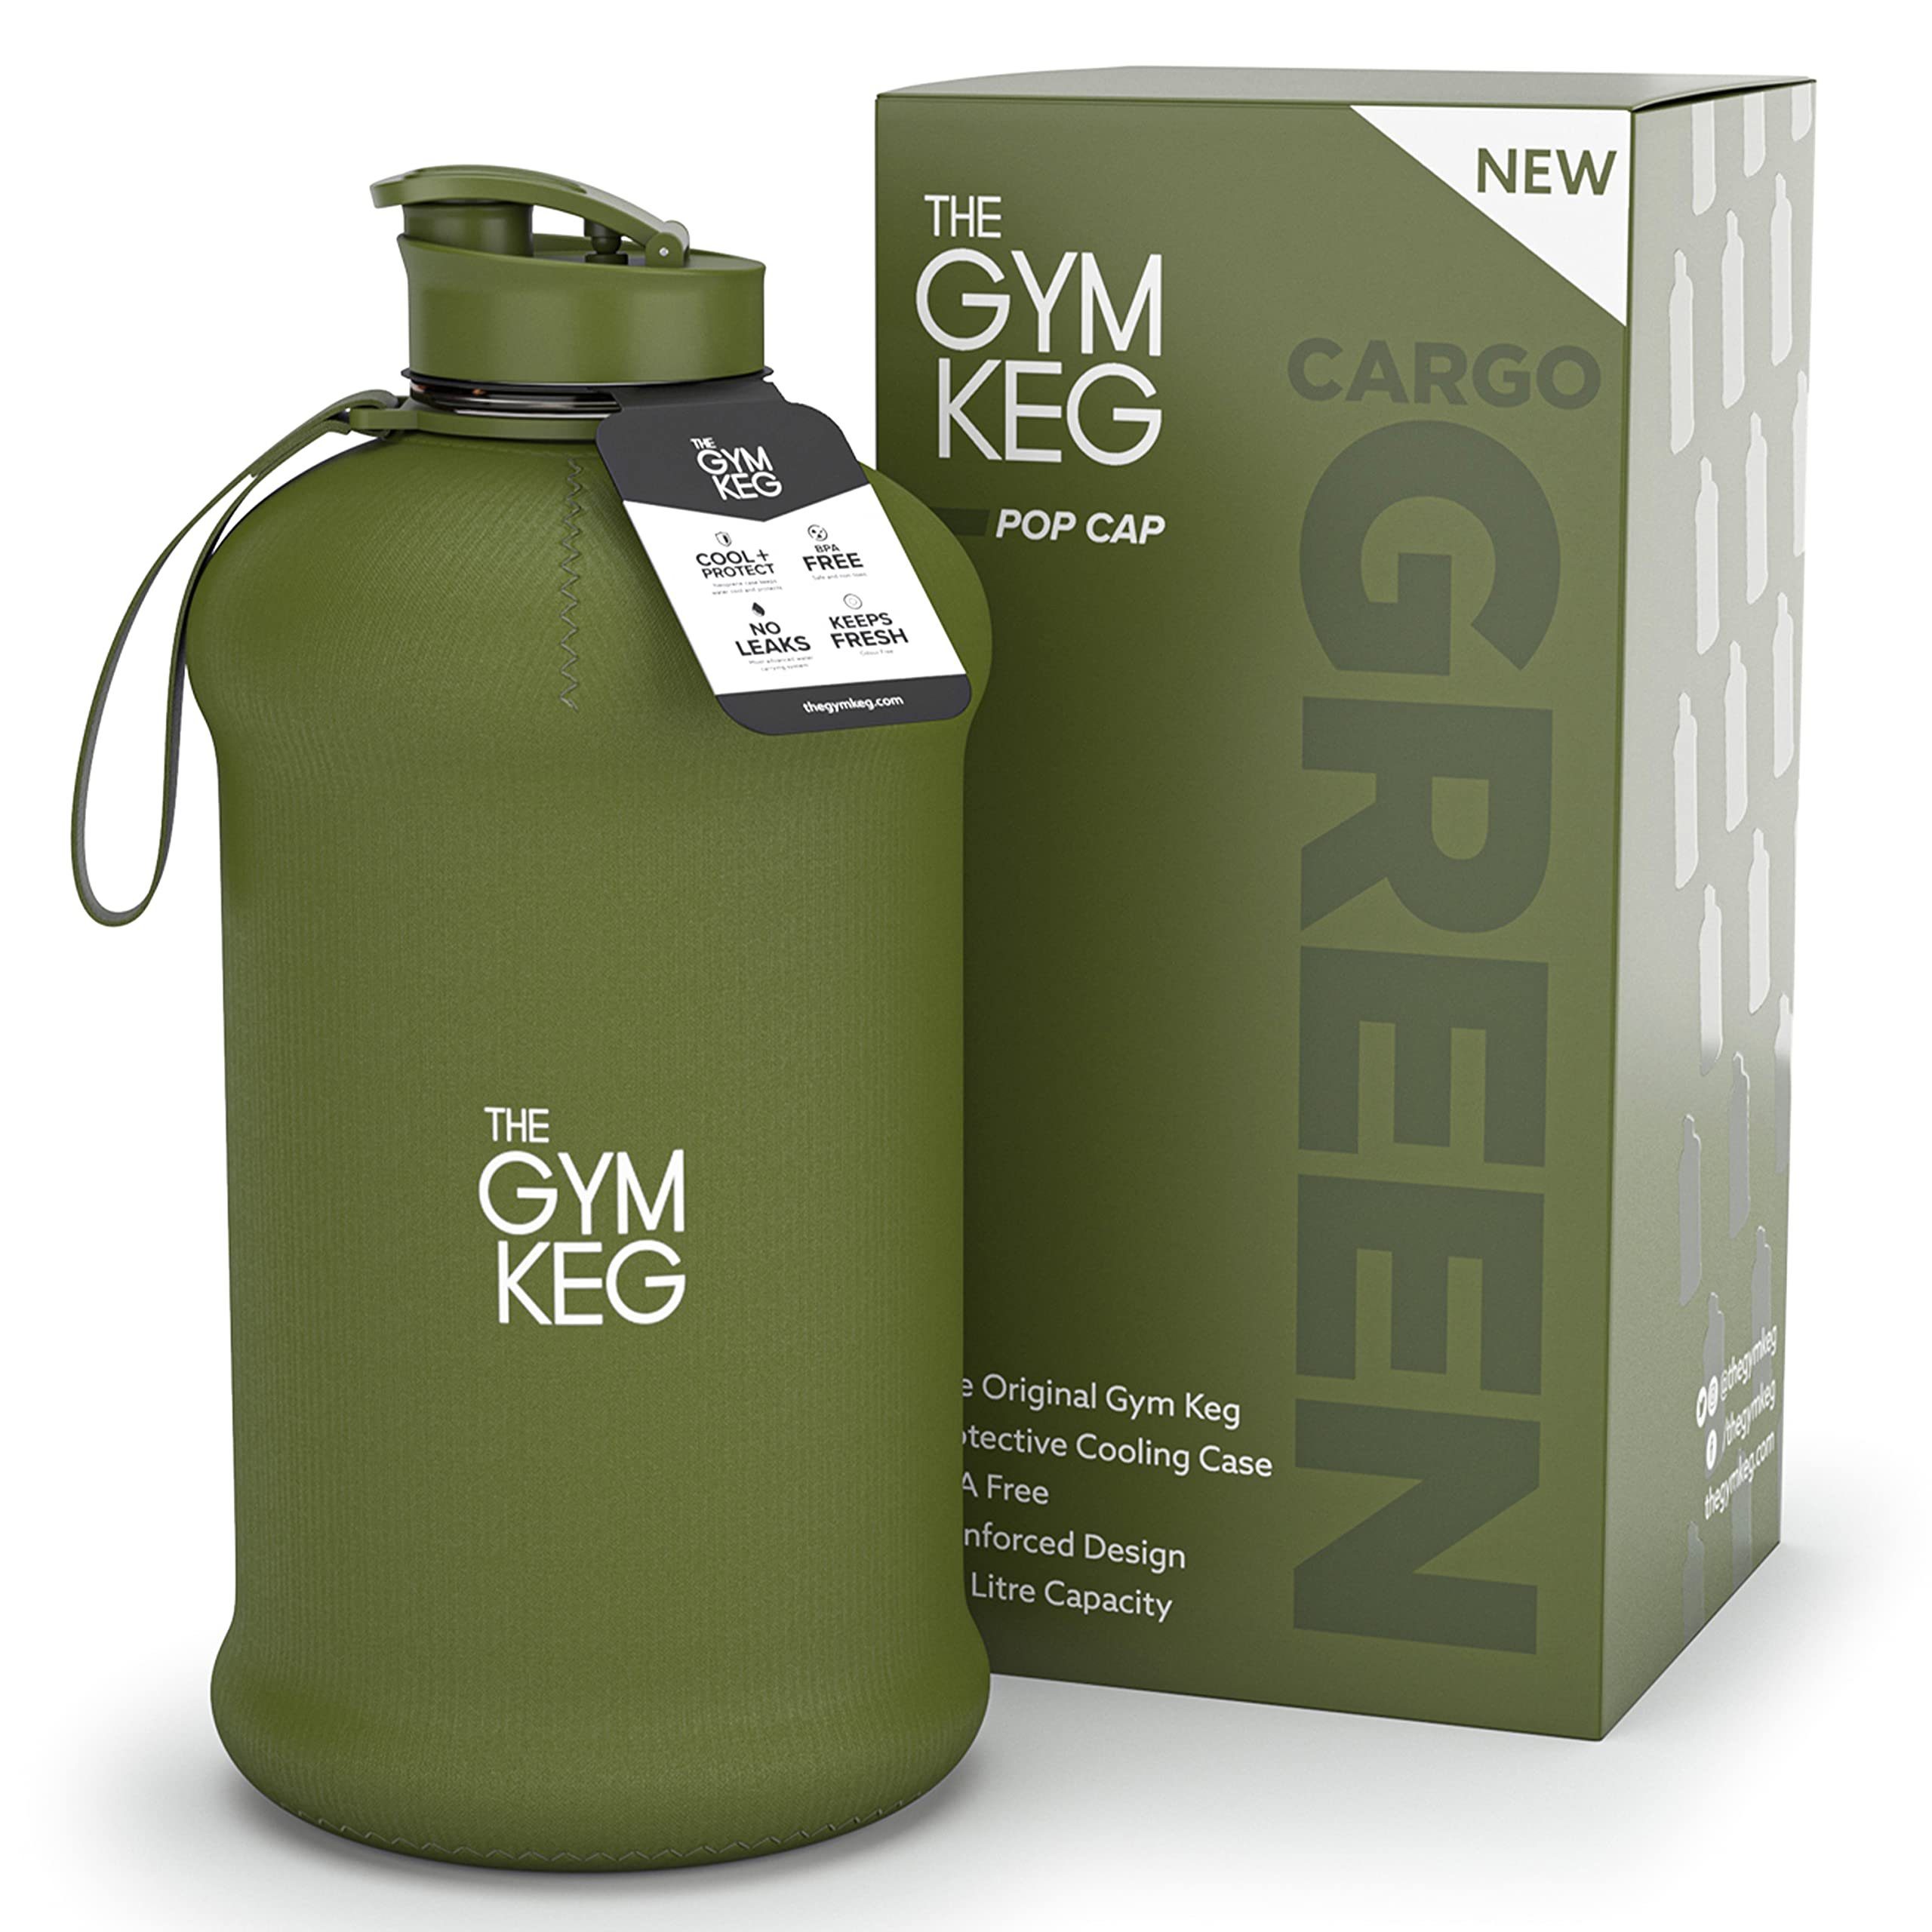 The Gym Keg Trinkflasche 2.2L Gym Trinkflasche mit Neoprene Sleeve und Griff, Wiederverwendbar, Cargo Green 2.2 Liter